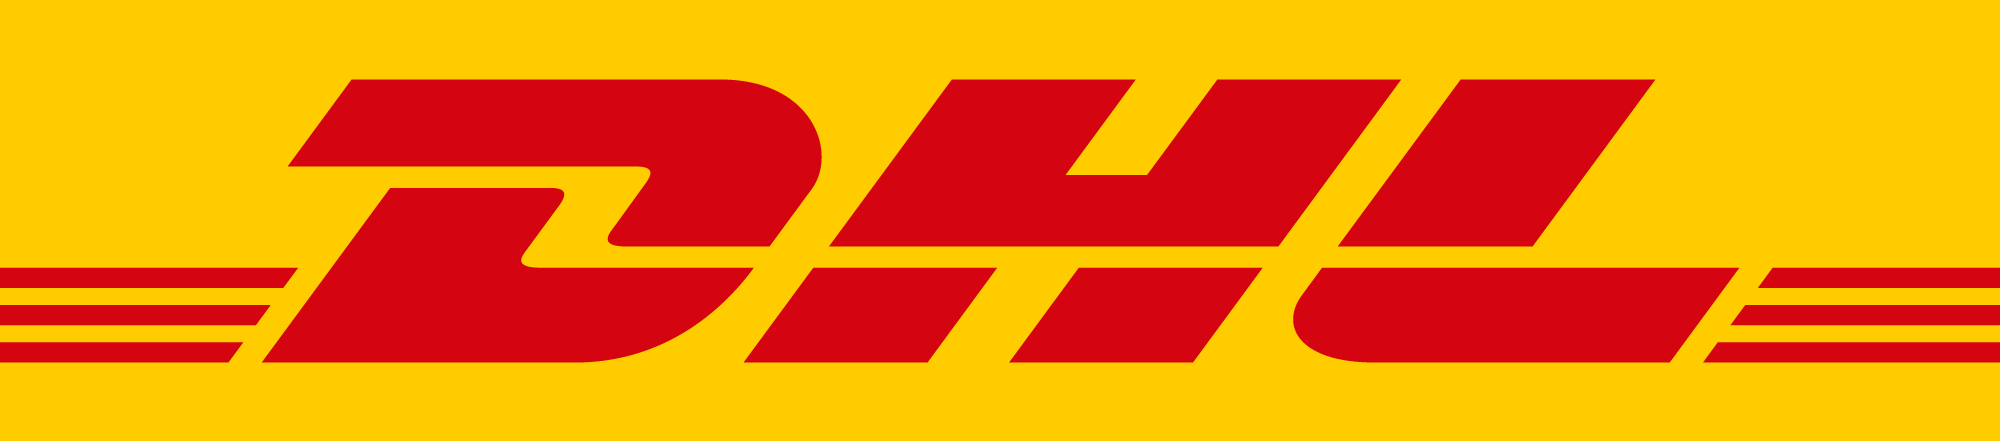 sponsor logo: DHL